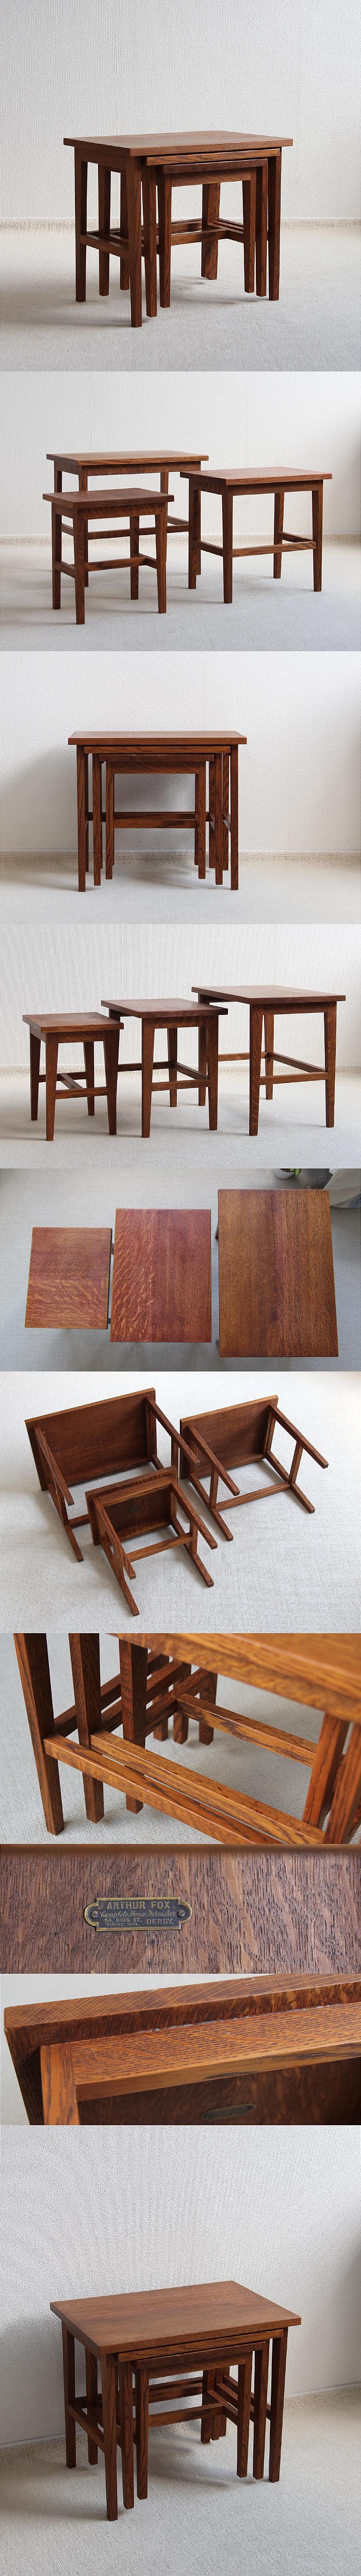 イギリス アンティーク調 ネストテーブル オーク材 木製 ヴィンテージ 家具「入れ子式テーブル」P-453